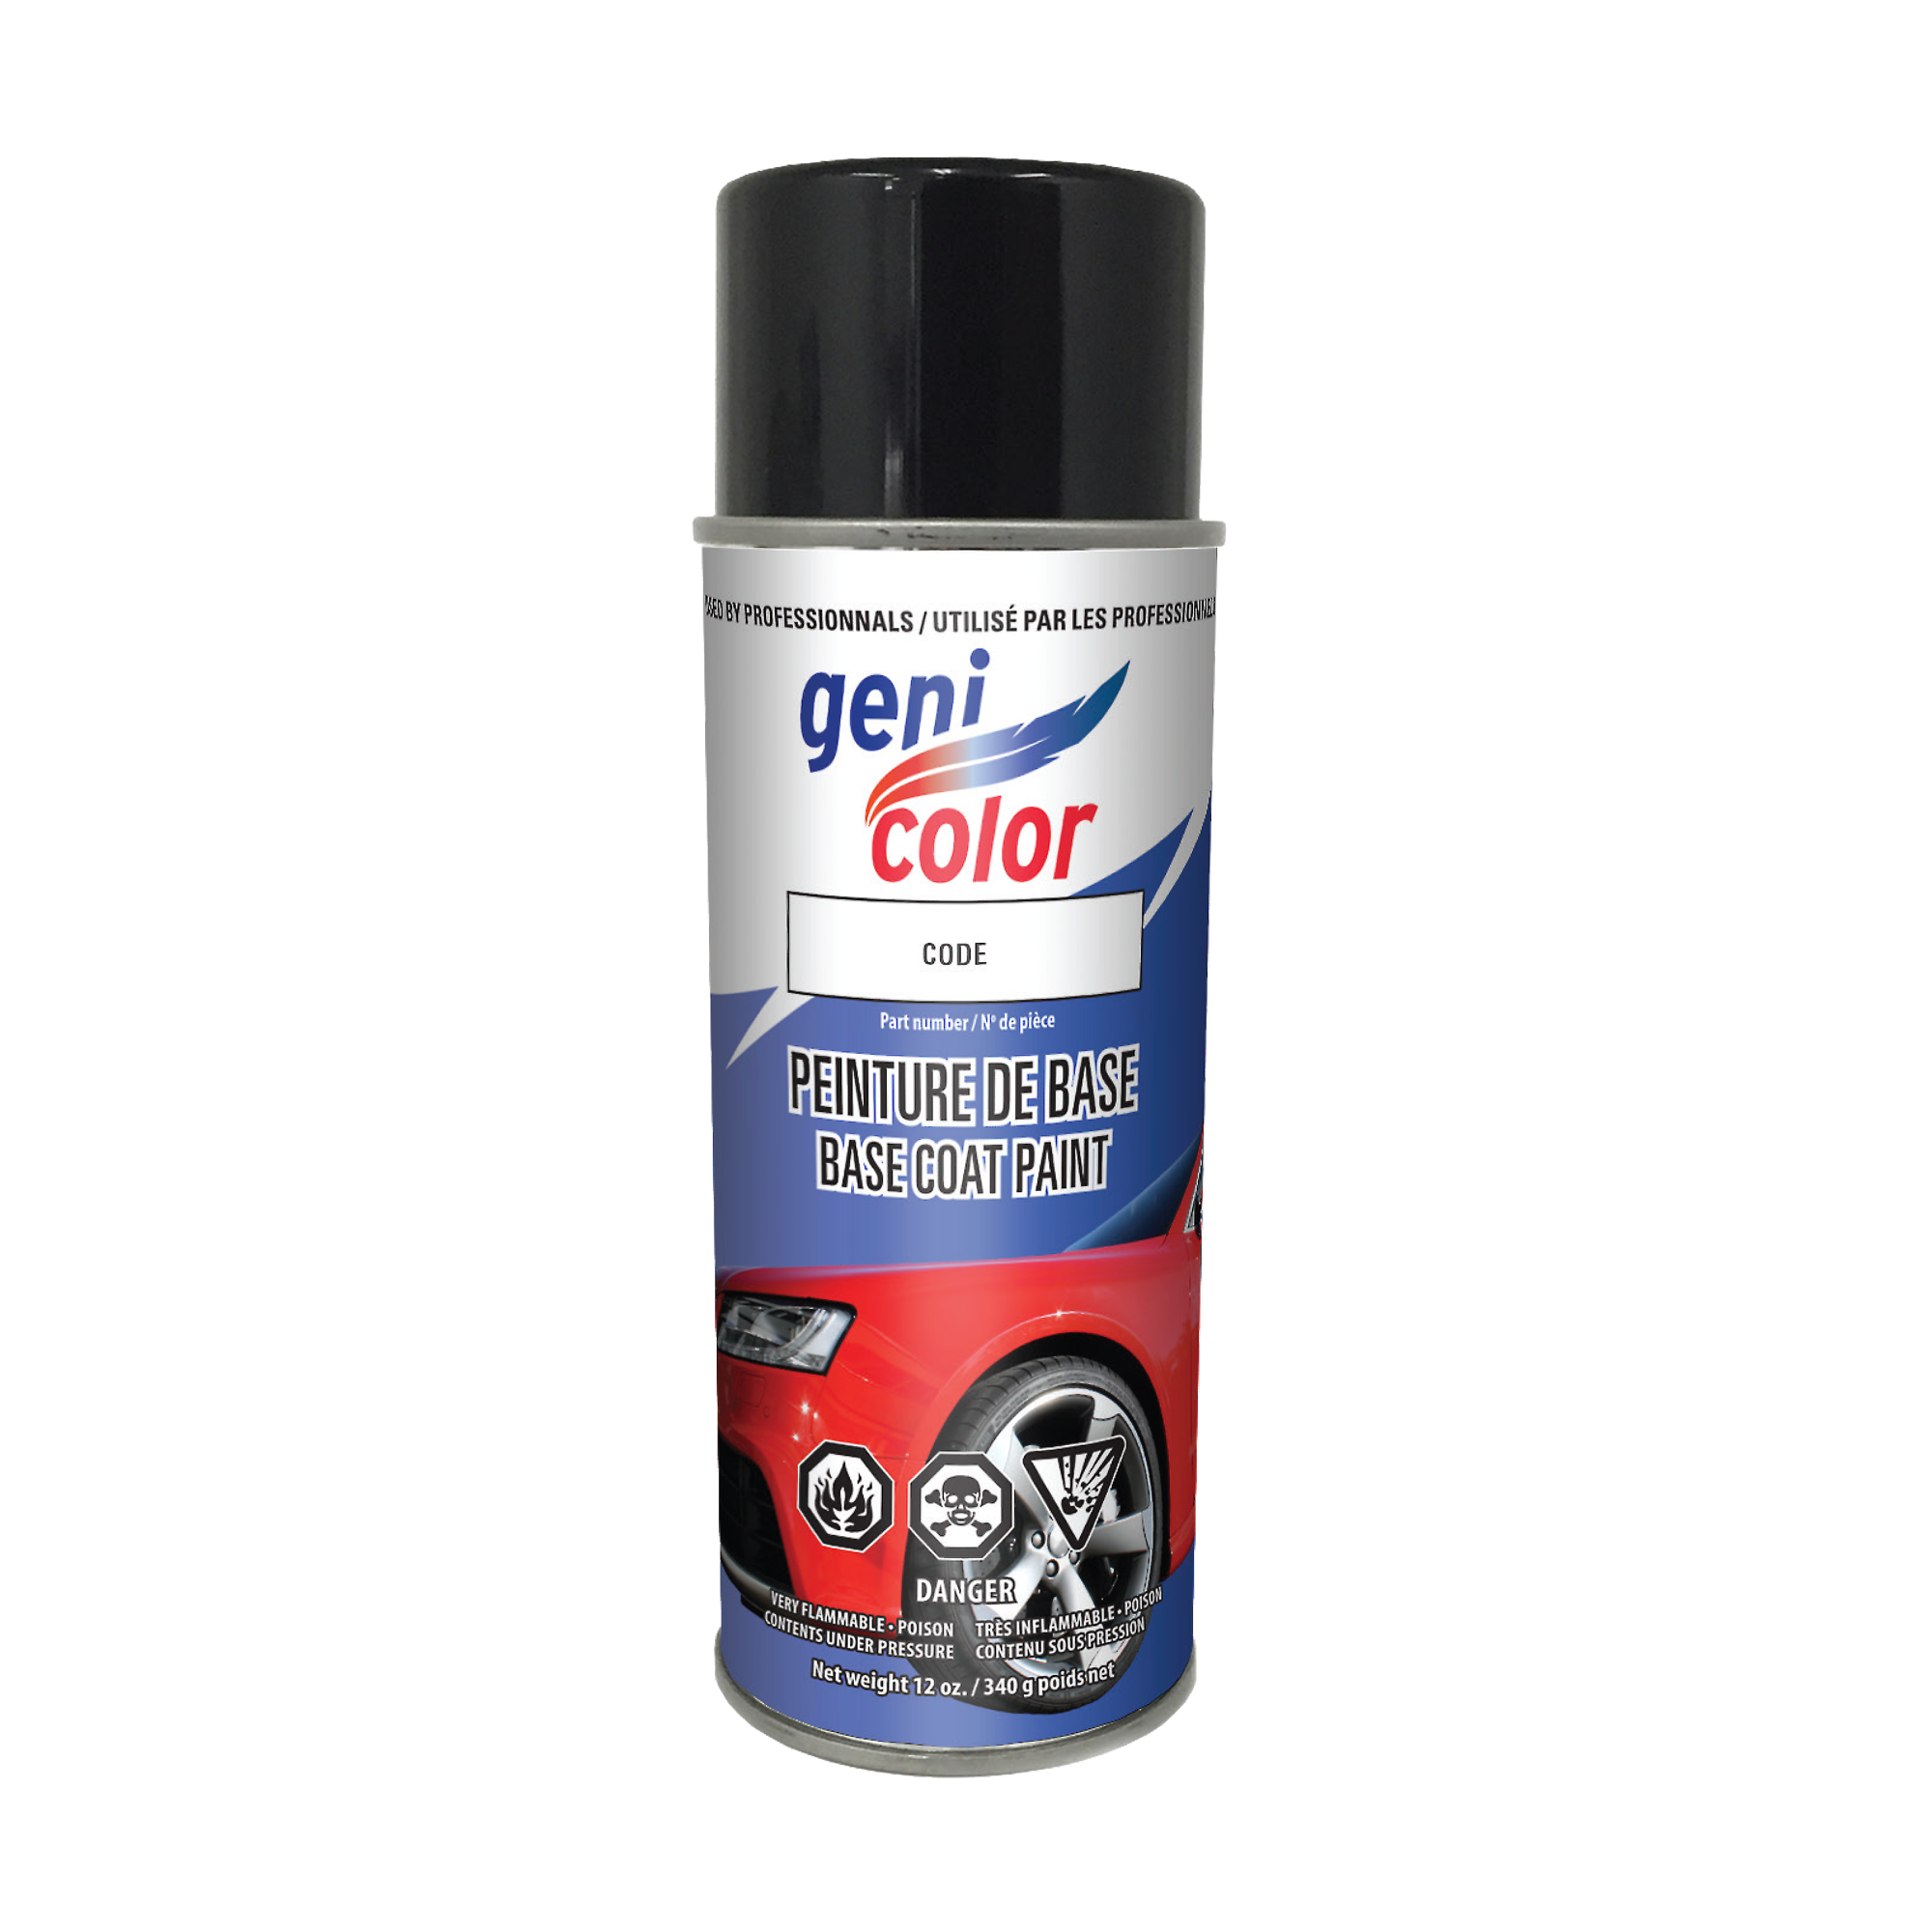 Spray paint - Base coat : 118,CML Spray Paint Base Coat